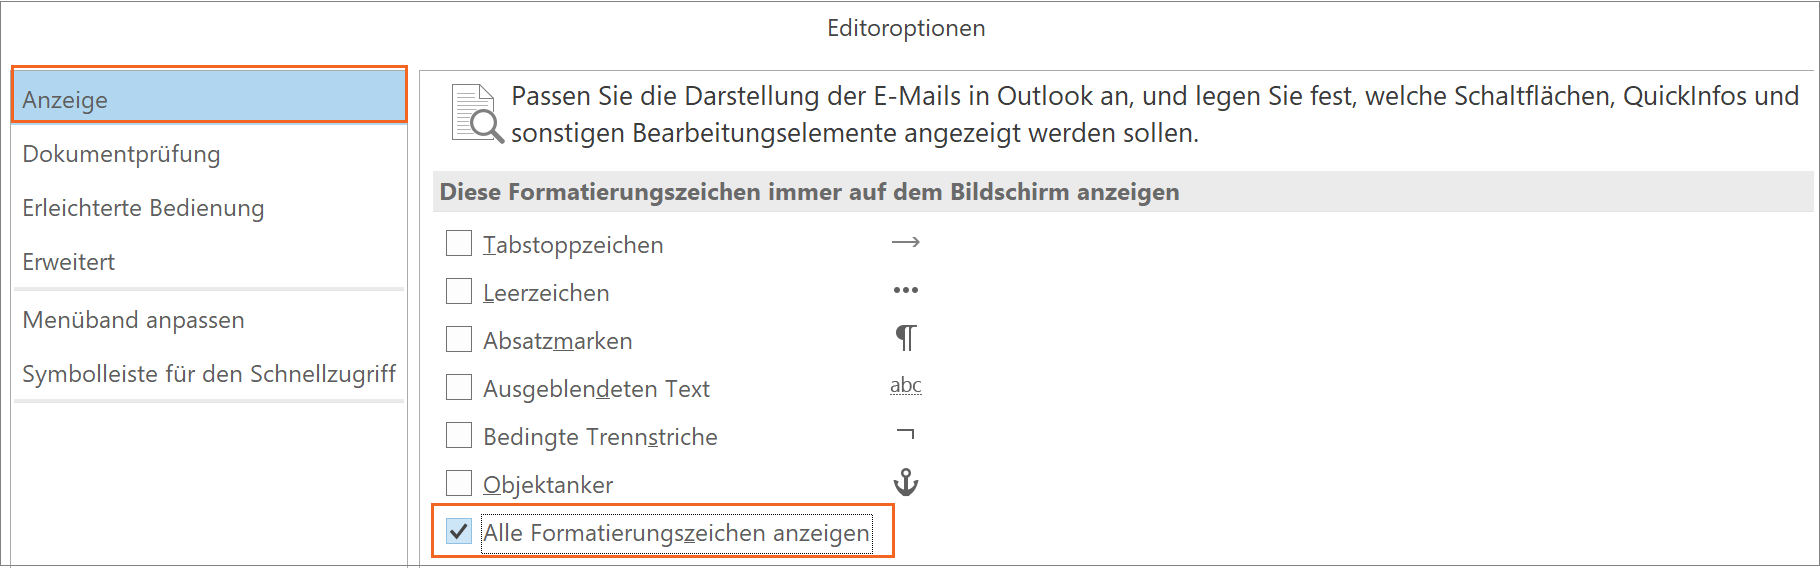 MS Outlook - Formatierungszeichen anzeigen